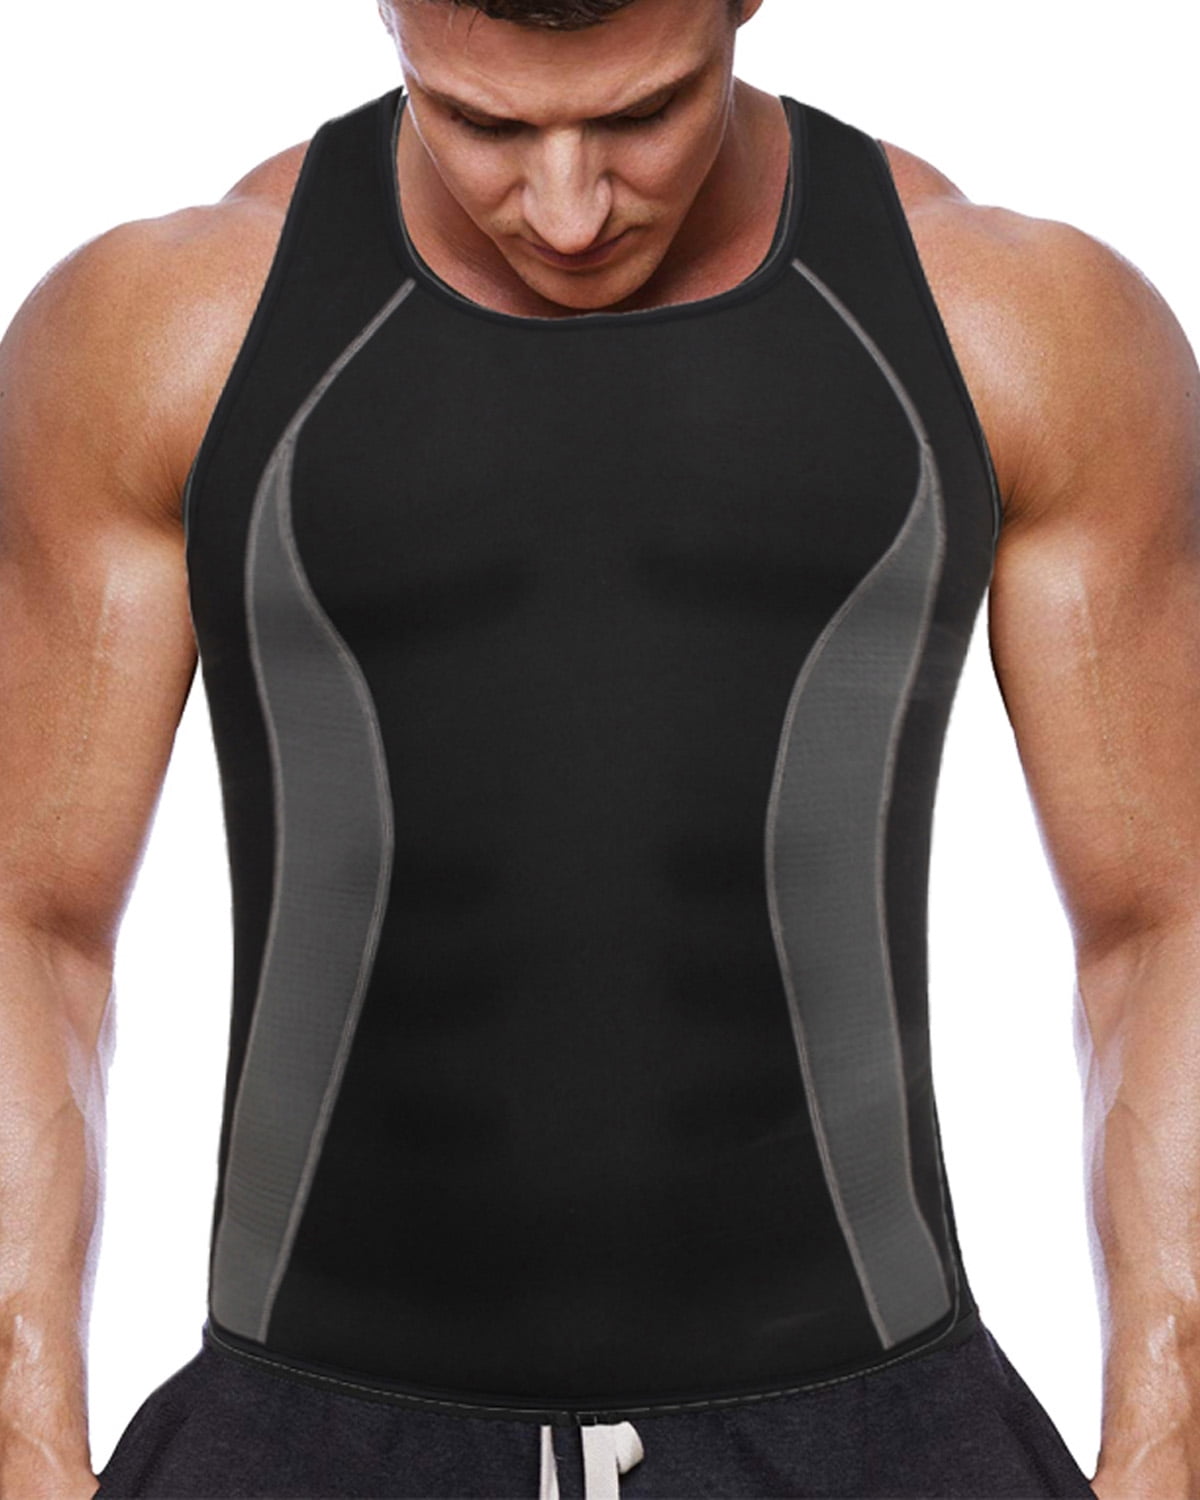 Sauna Vest for Men Neoprene Sauna Suit for Men Waist Trainer Vest Zipper Body Shaper Waist Trainer for Plus Size Men